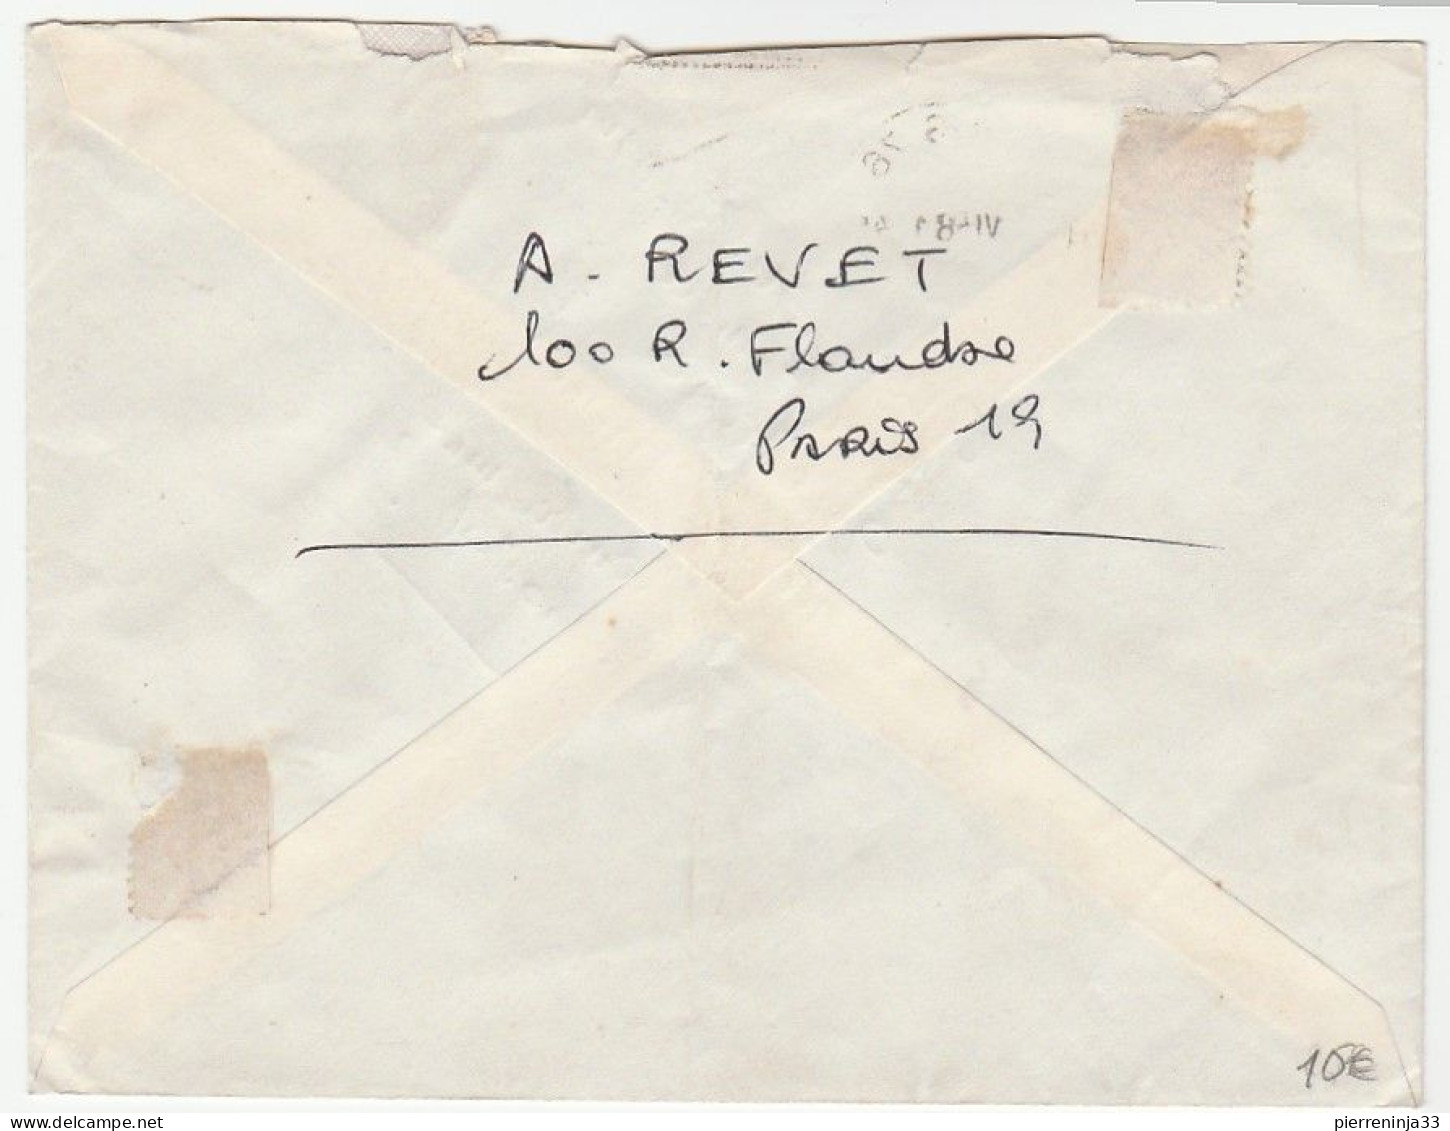 Lettre Avec Mixte Timbre Postal Et Timbre Fiscal (20f Lettre 20g), Total 21f Donc Pour Tromper La Poste, 1958 - Lettres & Documents